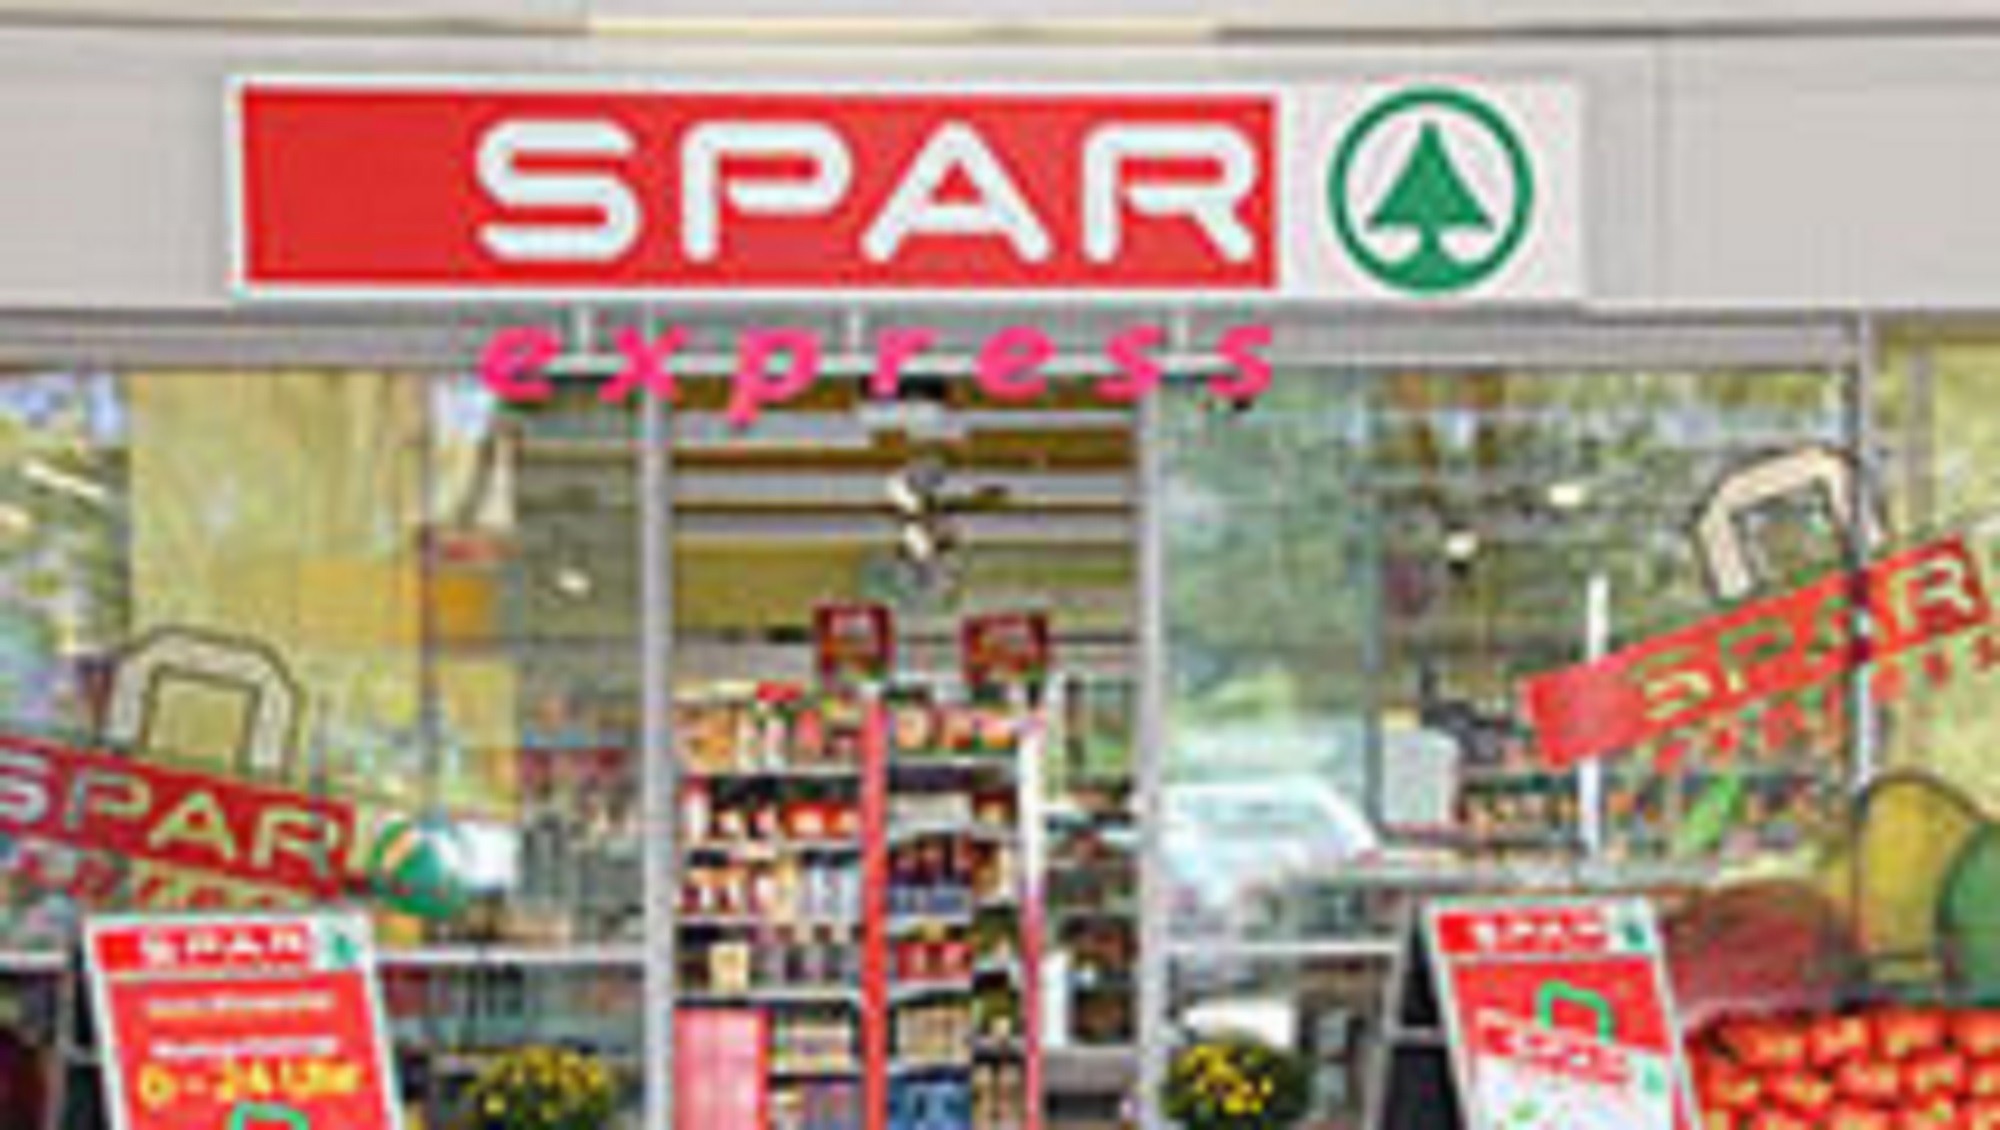 AUSTRIA-SPAR-Express-forecourt-store11